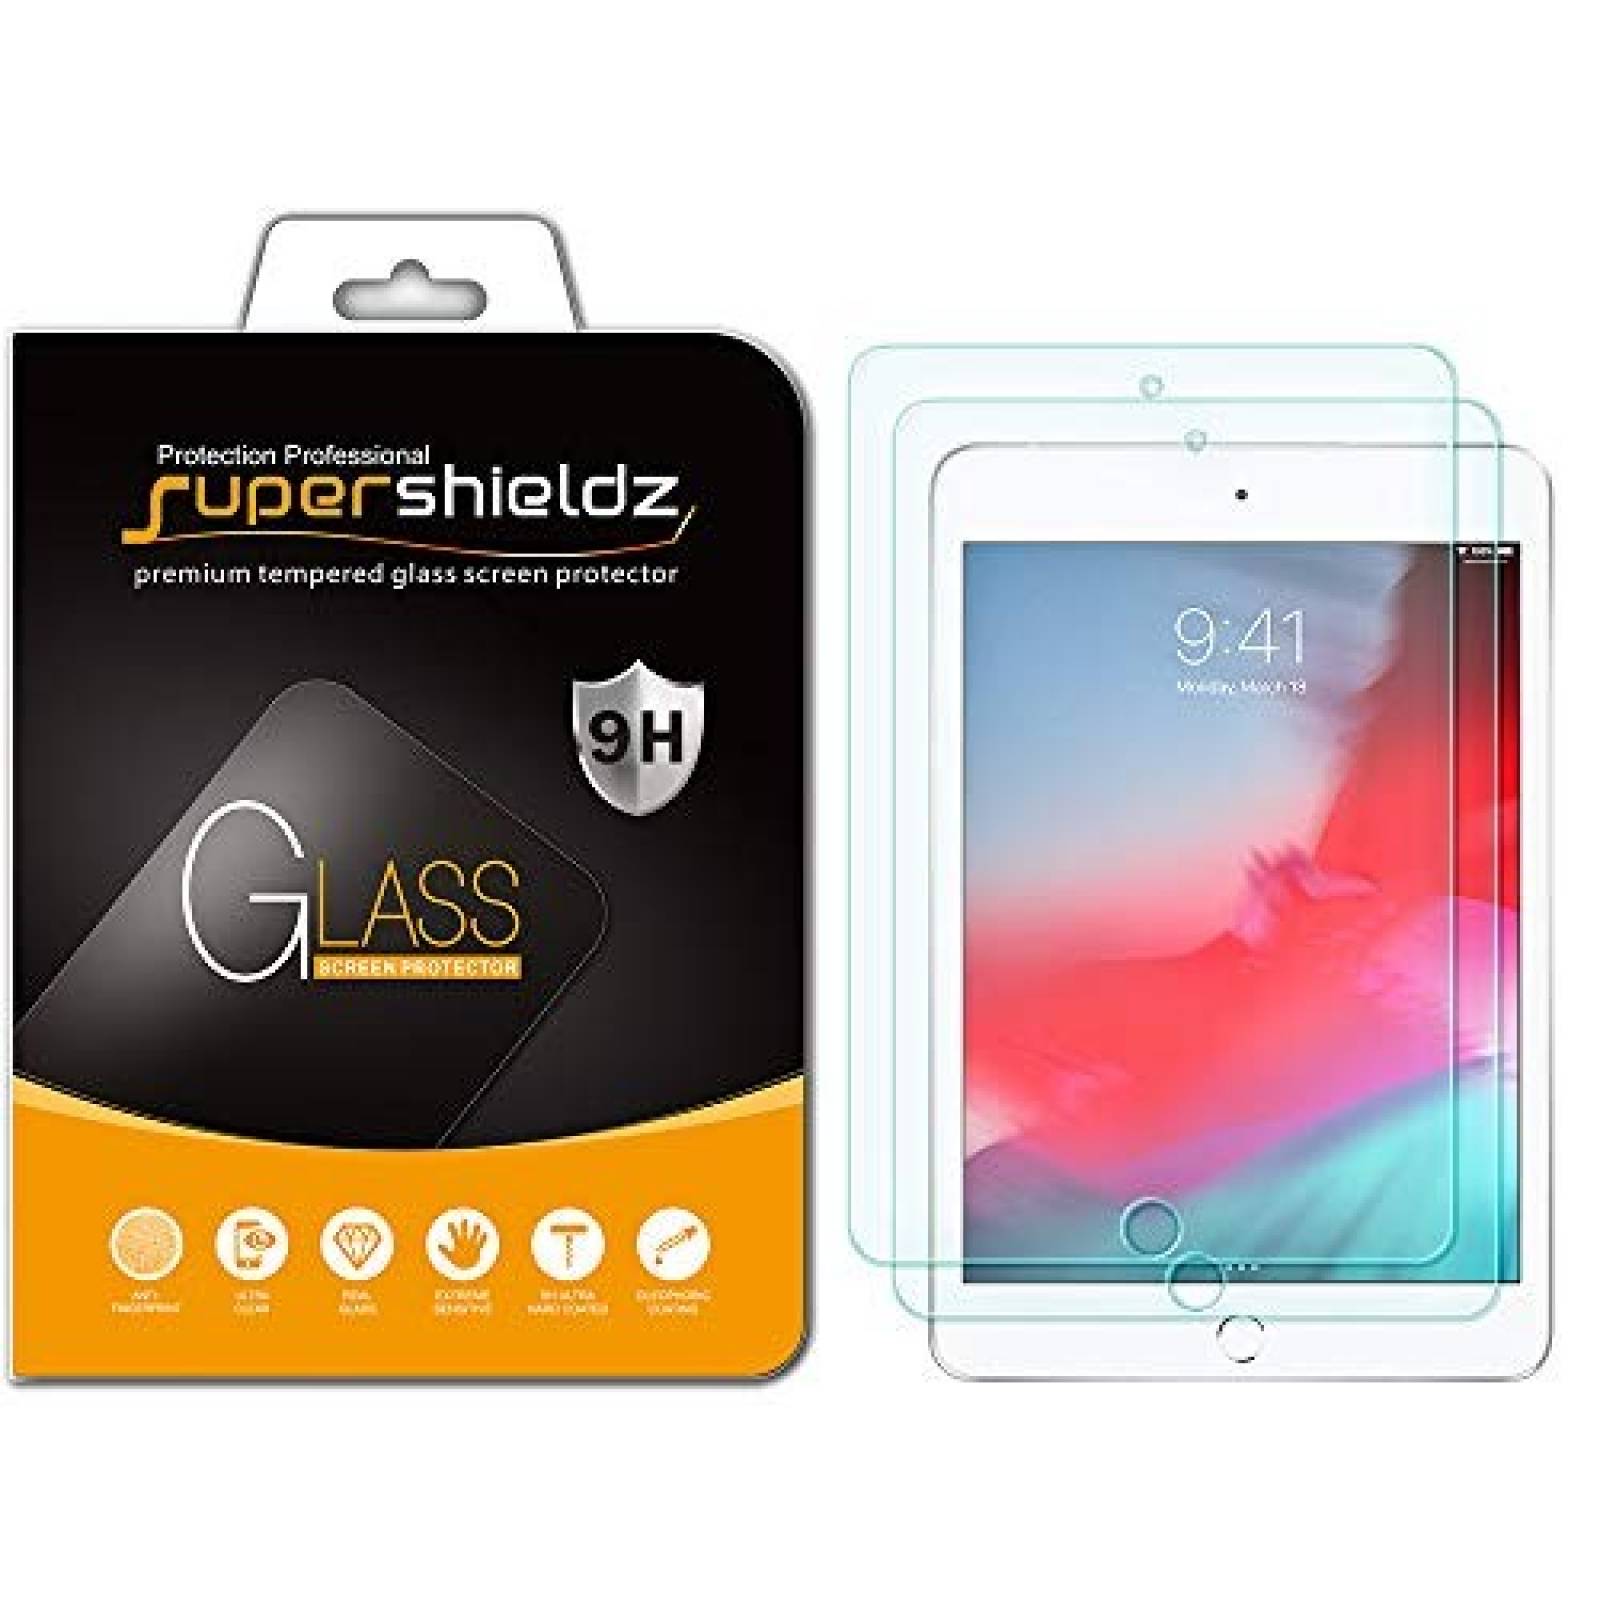 Protectores cristal templado Supershieldz iPad Mini 4 5 2pzs